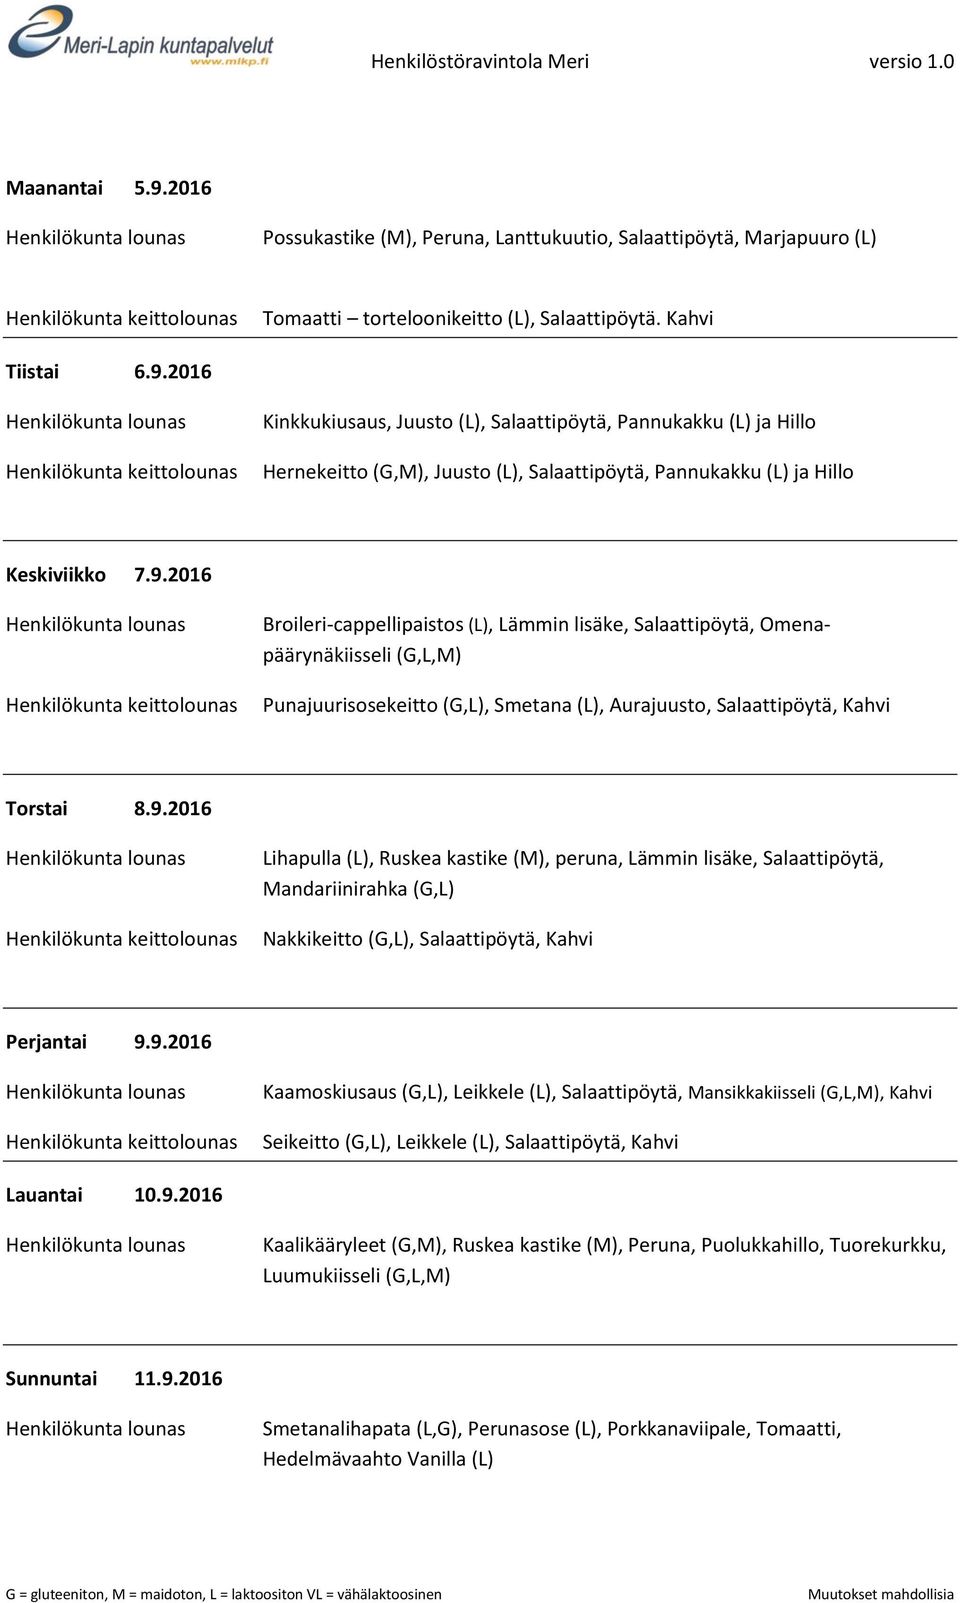 9.2016 Kaamoskiusaus (G,L), Leikkele (L), Salaattipöytä, Mansikkakiisseli, Kahvi Seikeitto (G,L), Leikkele (L), Salaattipöytä, Kahvi Lauantai 10.9.2016 Kaalikääryleet (G,M), Ruskea kastike (M), Peruna, Puolukkahillo, Tuorekurkku, Luumukiisseli Sunnuntai 11.